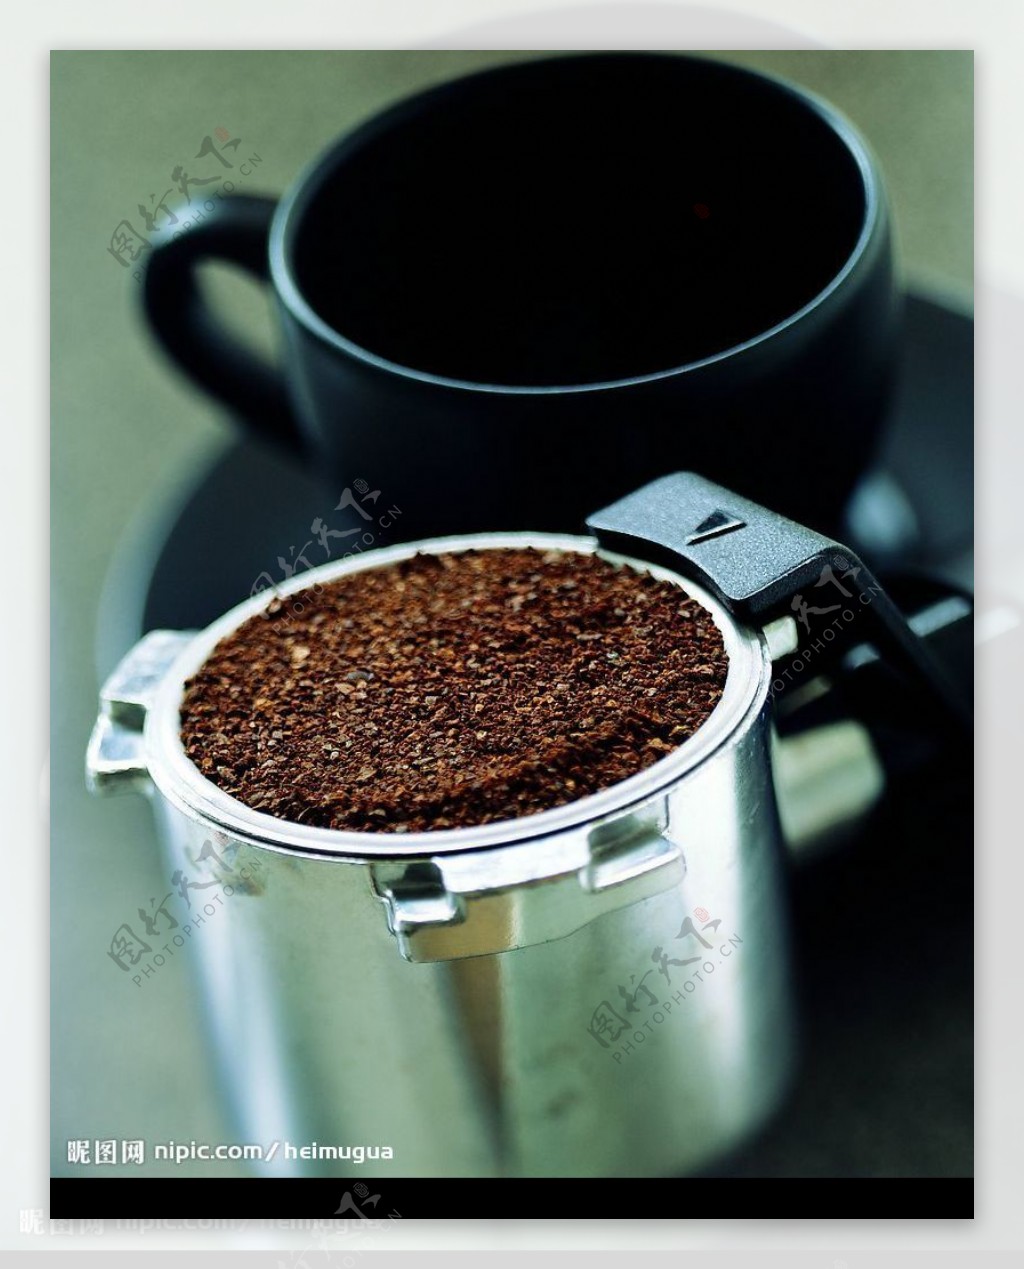 咖啡桶与咖啡杯图片